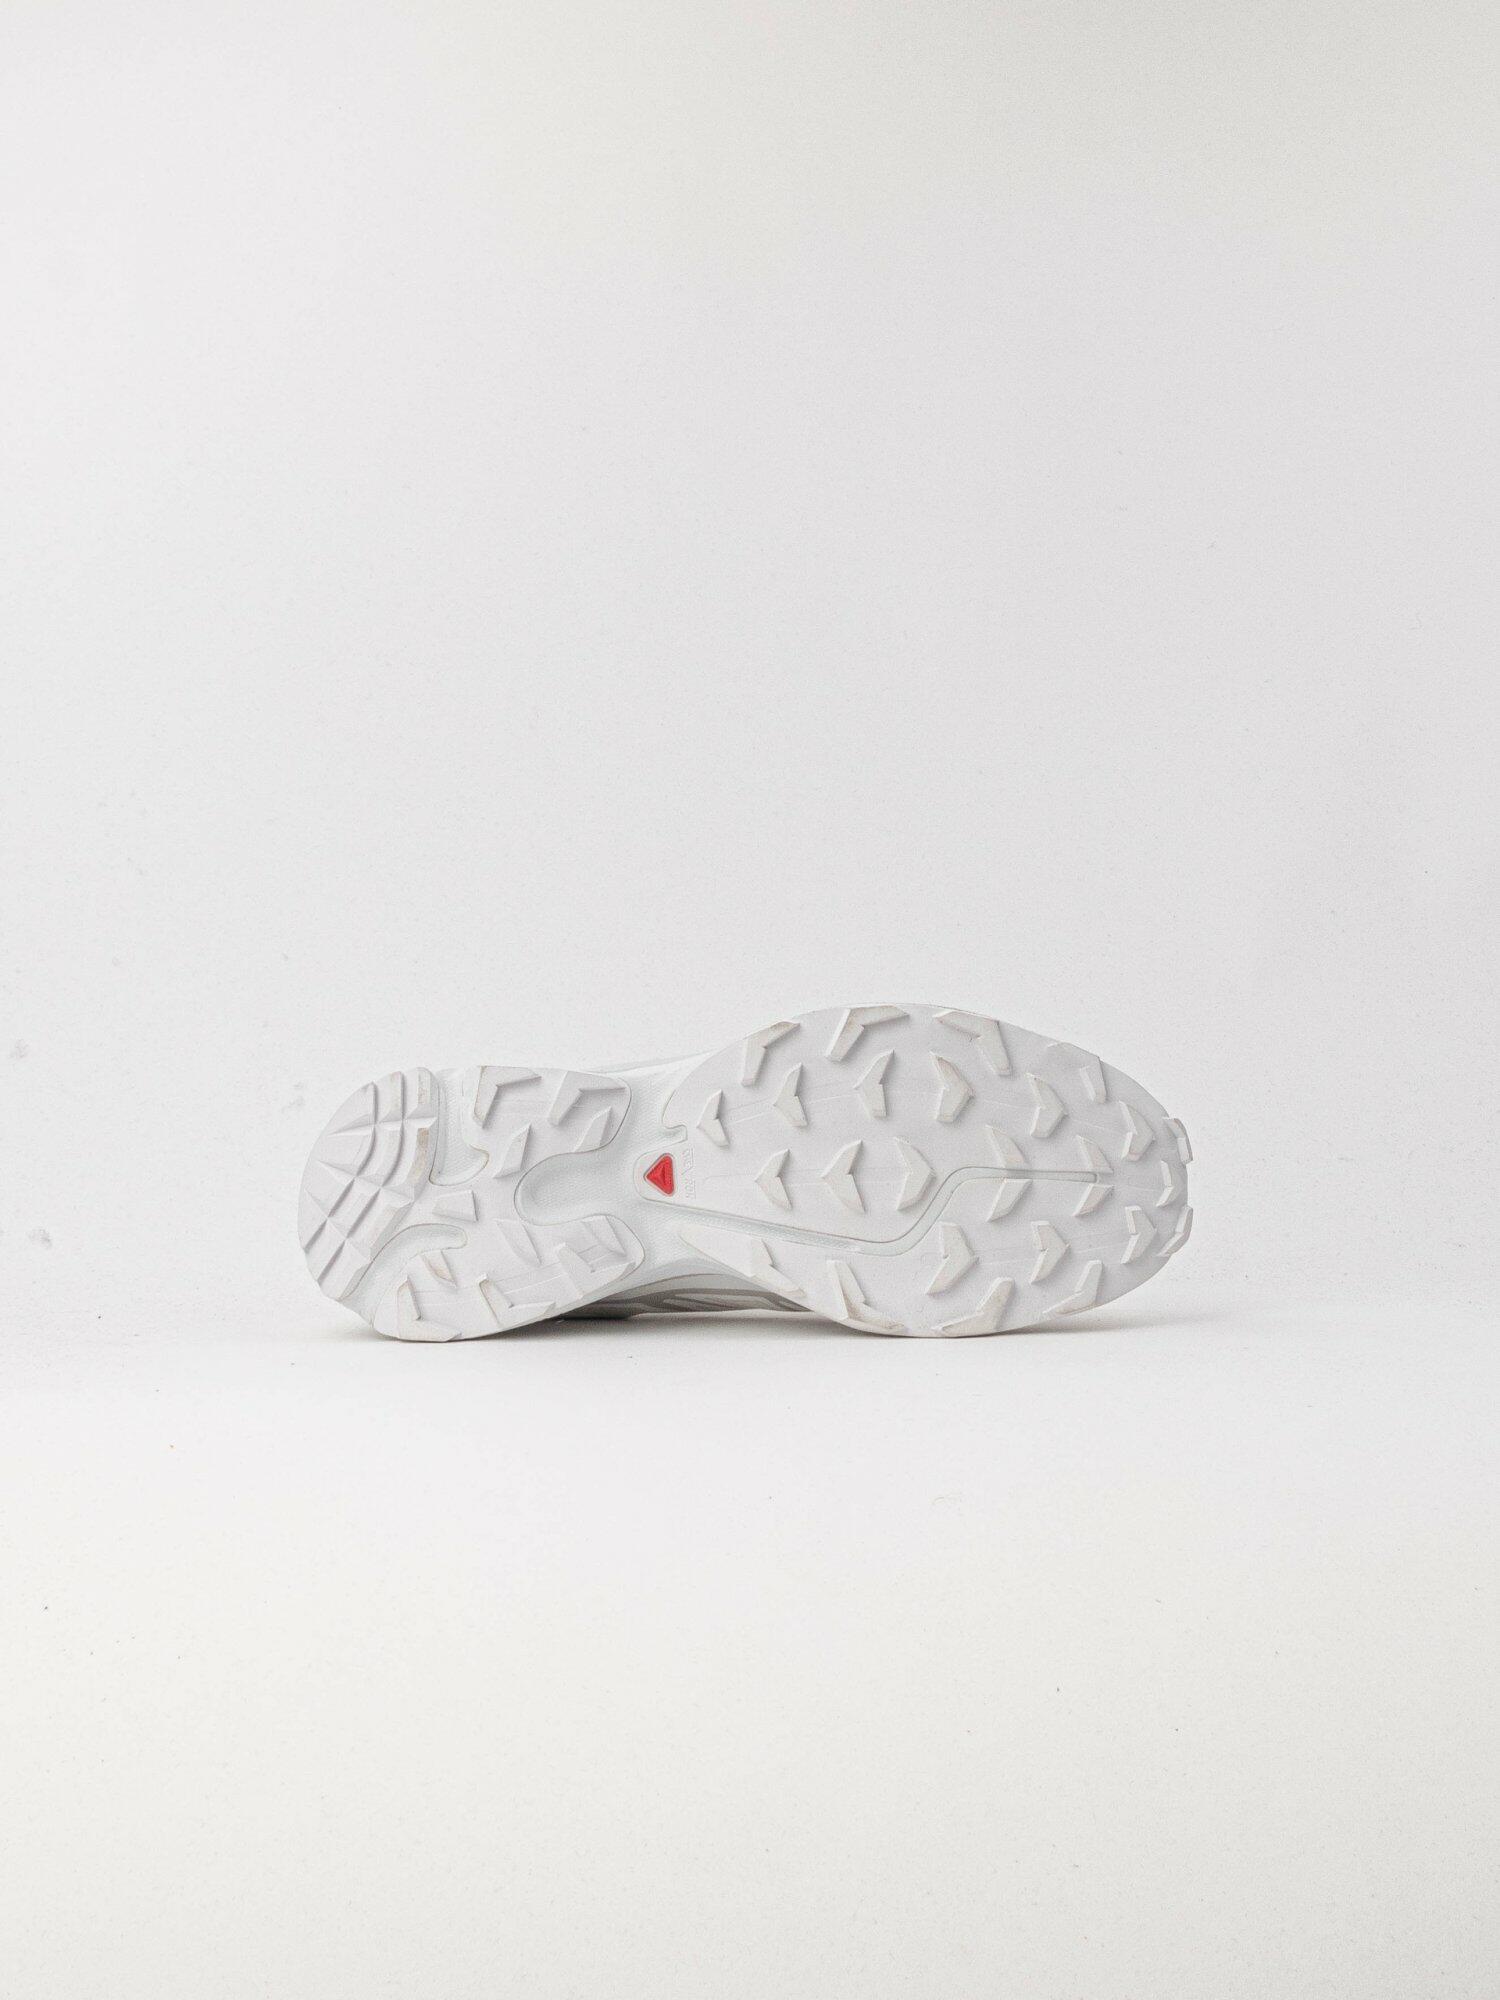 Salomon shoes XT-6 white color L41252900